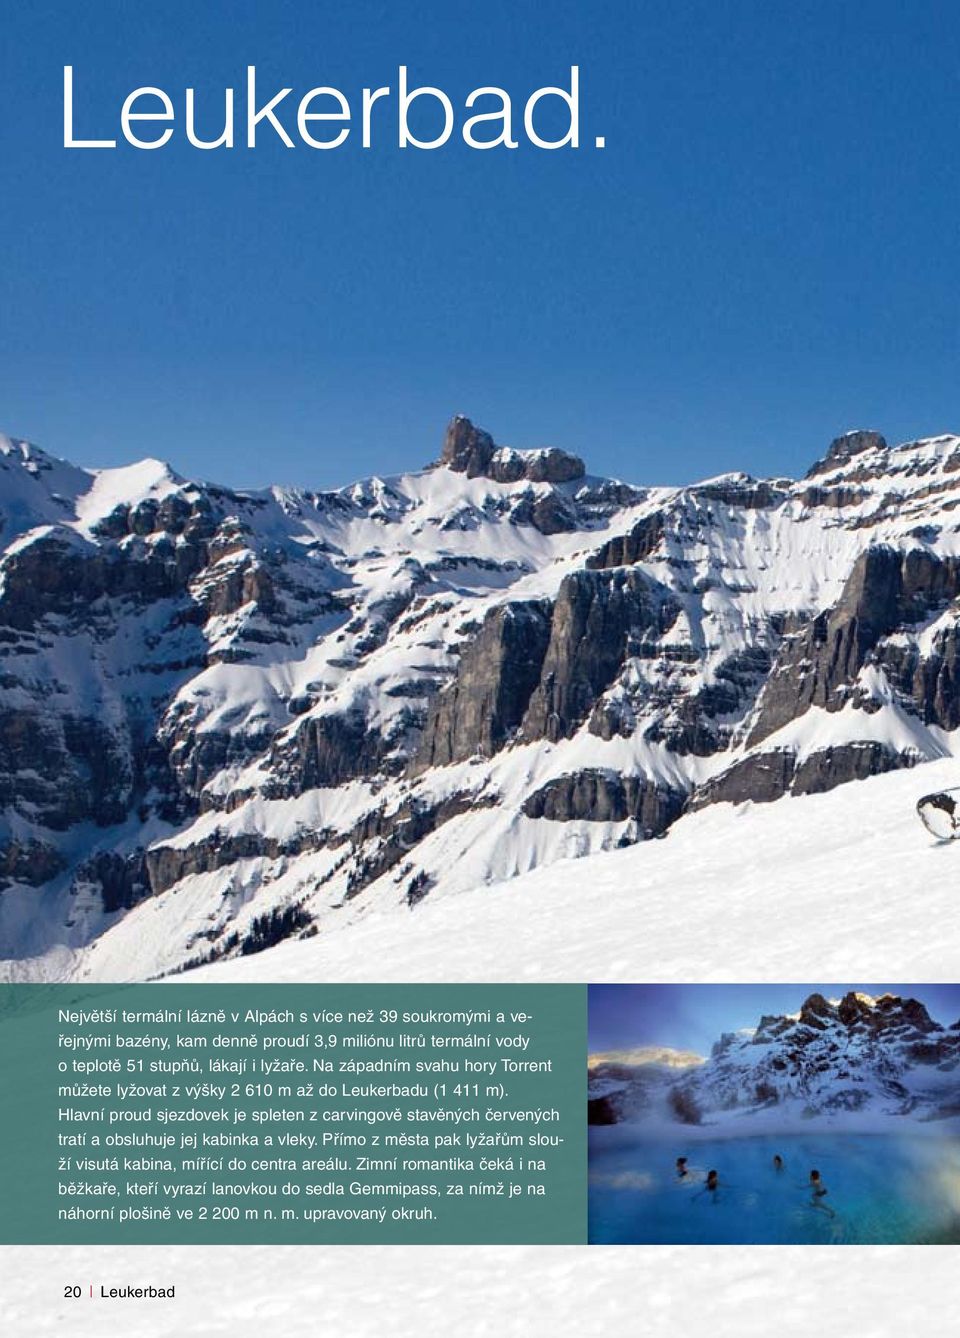 lákají i lyžaře. Na západním svahu hory Torrent můžete lyžovat z výšky 2 610 m až do Leukerbadu (1 411 m).